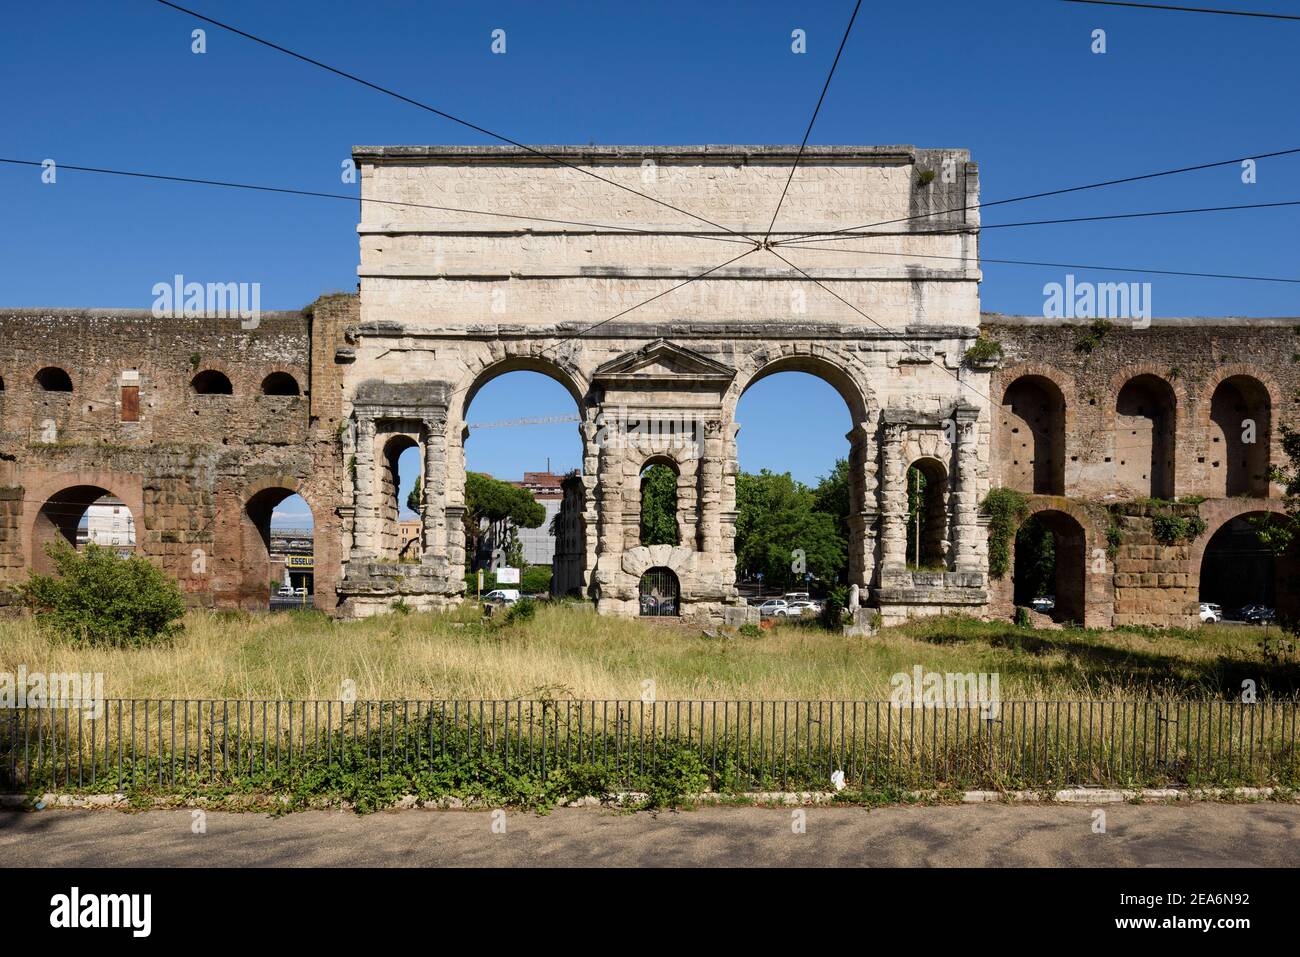 Roma. Italia. Porta Maggiore (vista interior, frente a la ciudad), construido en 52 por el emperador Claudius, es una de las puertas orientales en el siglo III Aur Foto de stock